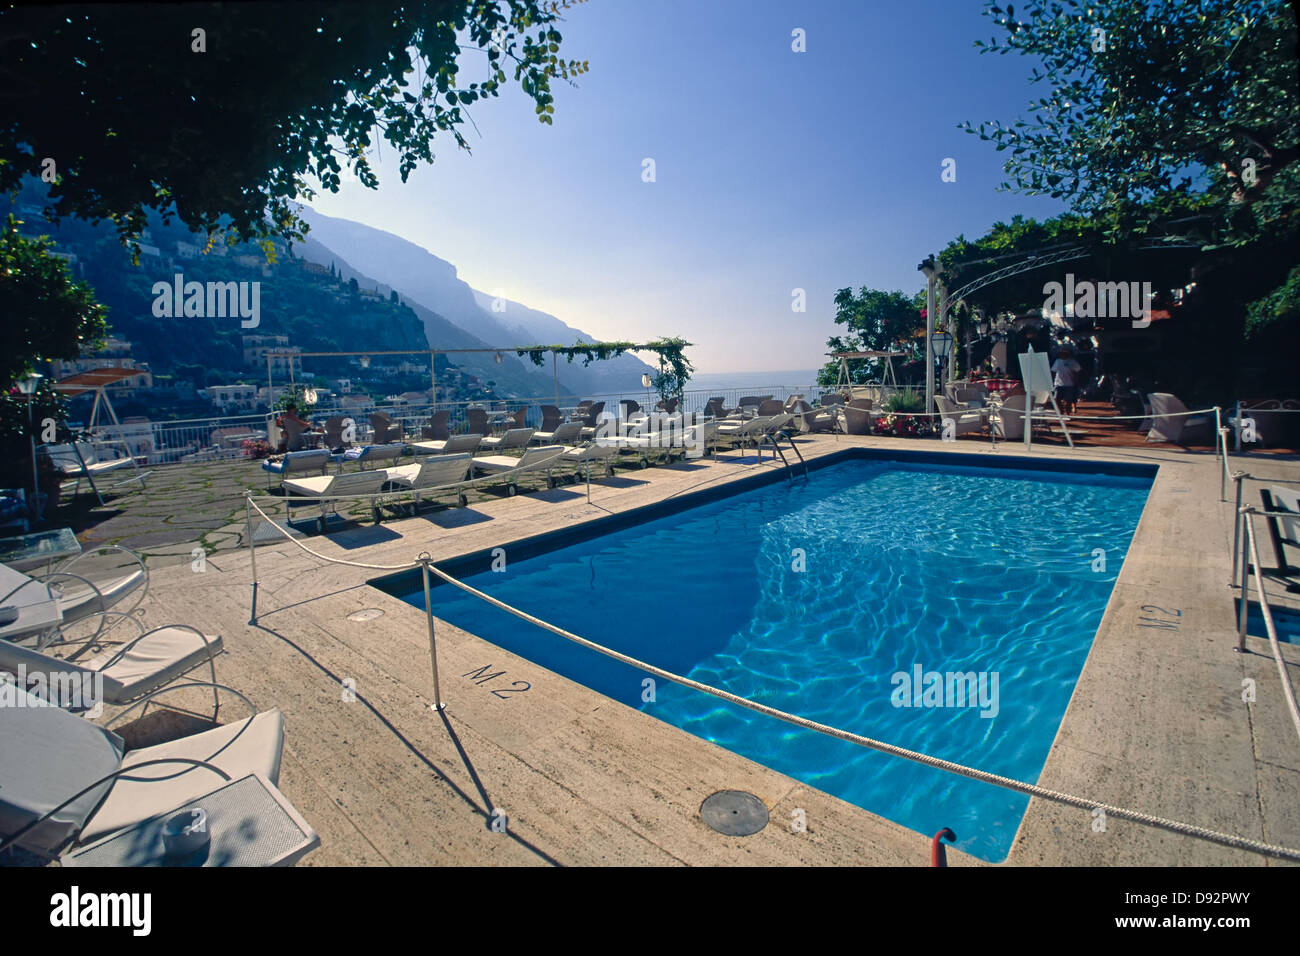 Swimming Pool on a Hotel Terrace, Hotel Poseidon, Positano, Campania, Italy Stock Photo